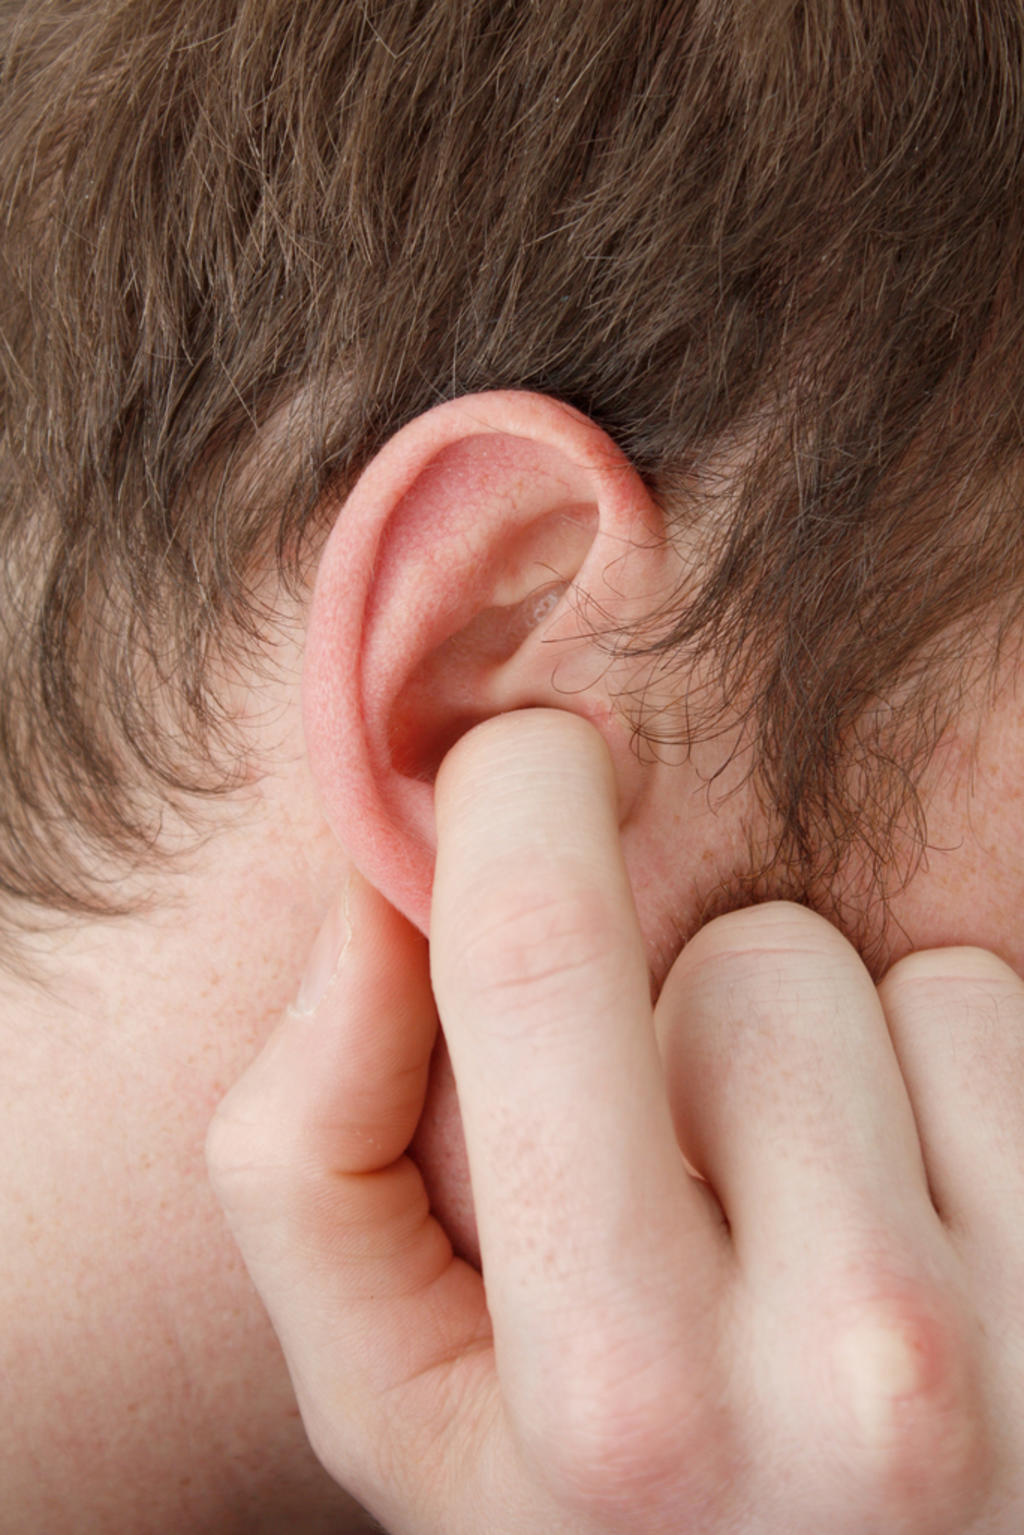 En un entorno ruidoso, el cerebro envía señales a los oídos para que el 'amplificador coclear' entre en funcionamiento y rebaje el nivel sonoro. (ARCHIVO)